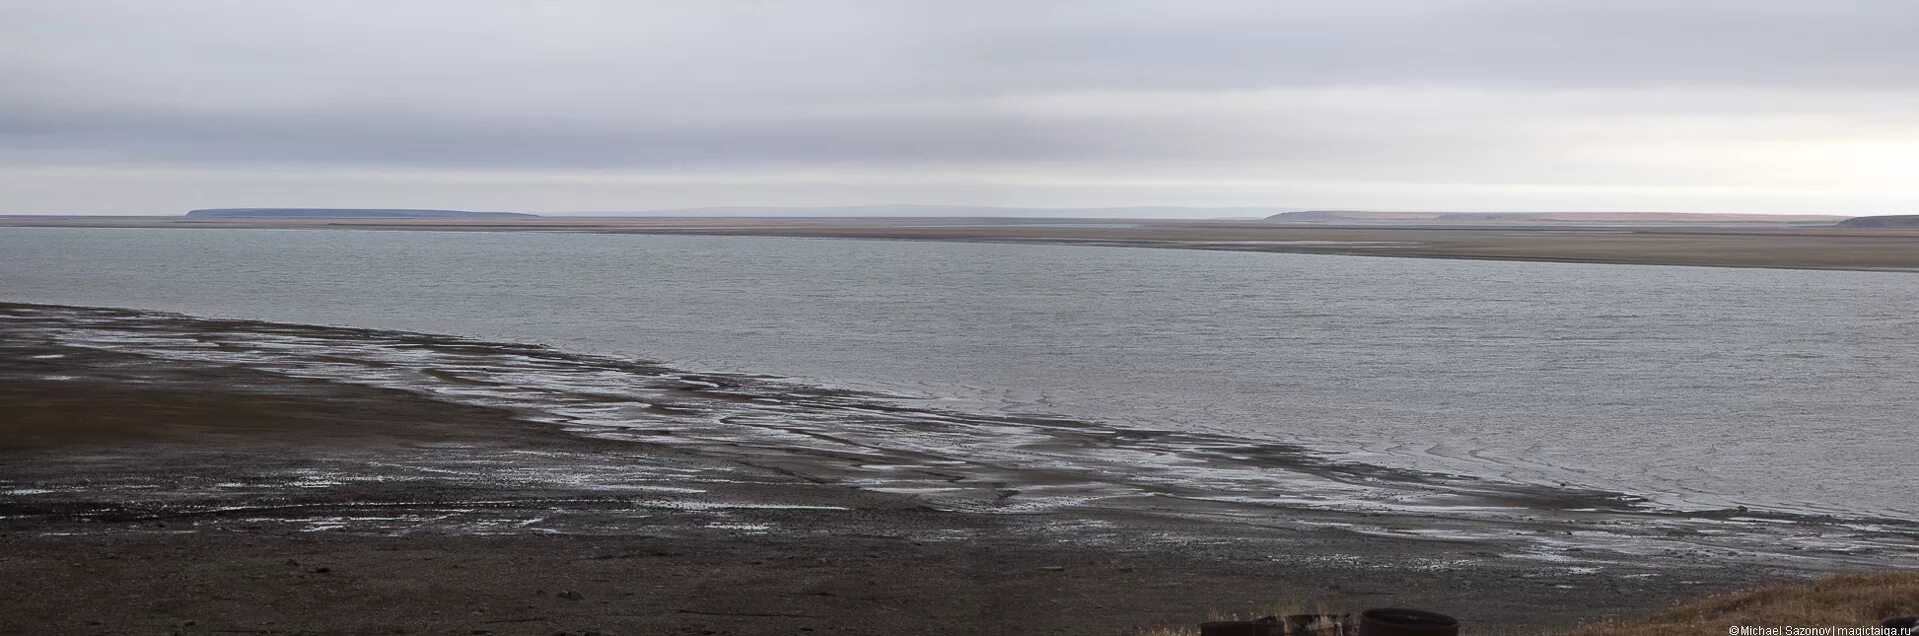 Длинной блистающей полосой тянется таймырское озеро. Пясина. Озеро Таймыр рельеф дна. Карта глубин озеро Таймыр. Таймырское озеро соленое или пресное.